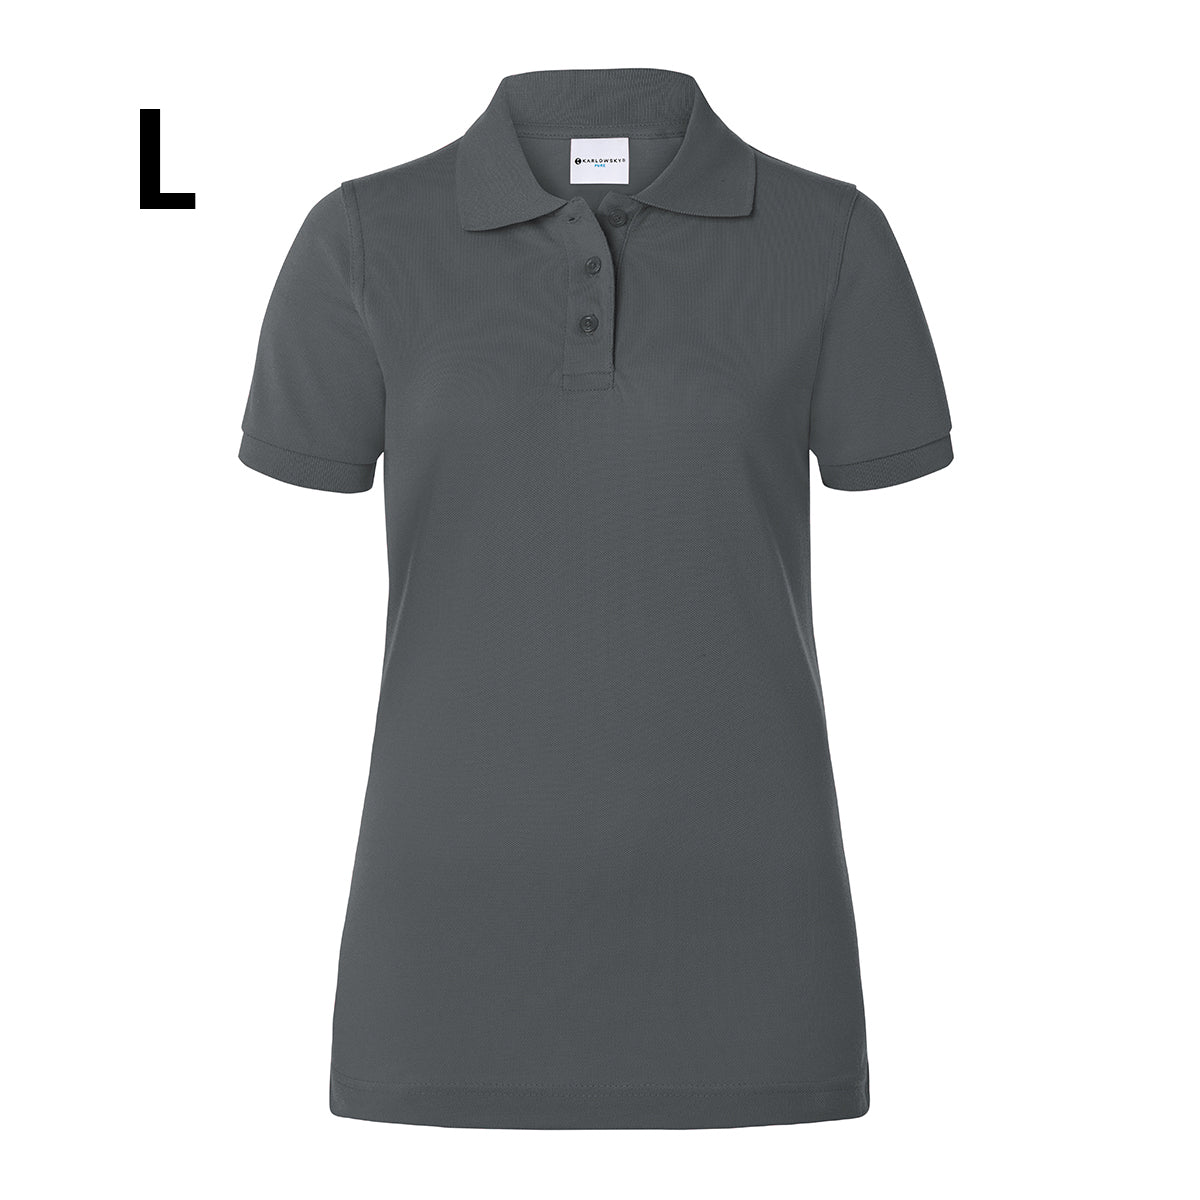 Karlowsky - Arbejdsbeklædning Basic Poloshirt til damer - Antracit - Størrelse: L